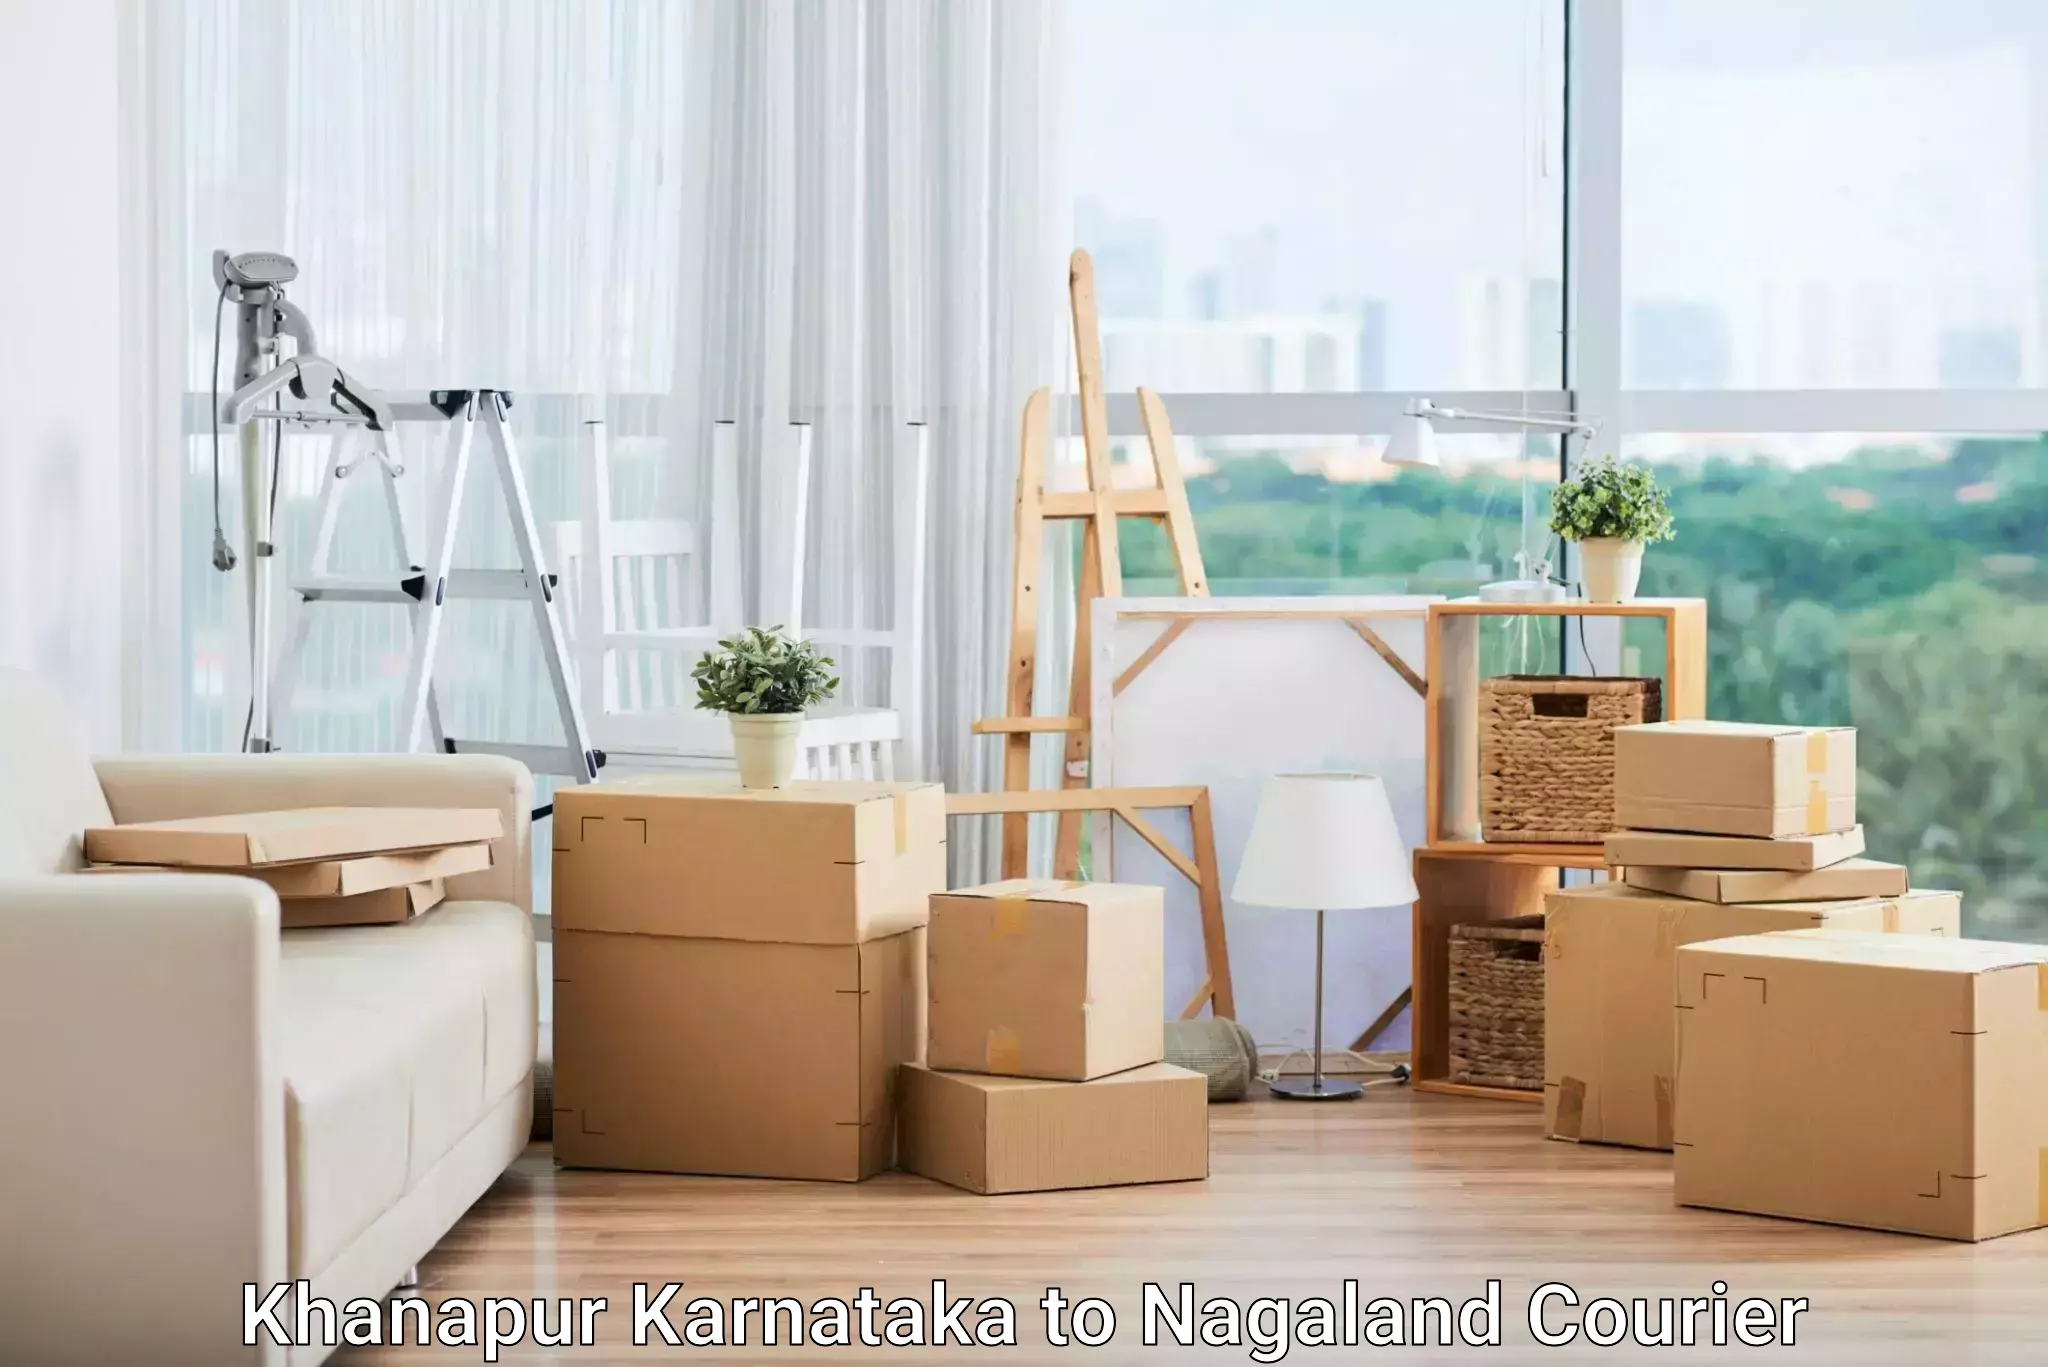 Simplified shipping solutions Khanapur Karnataka to Nagaland